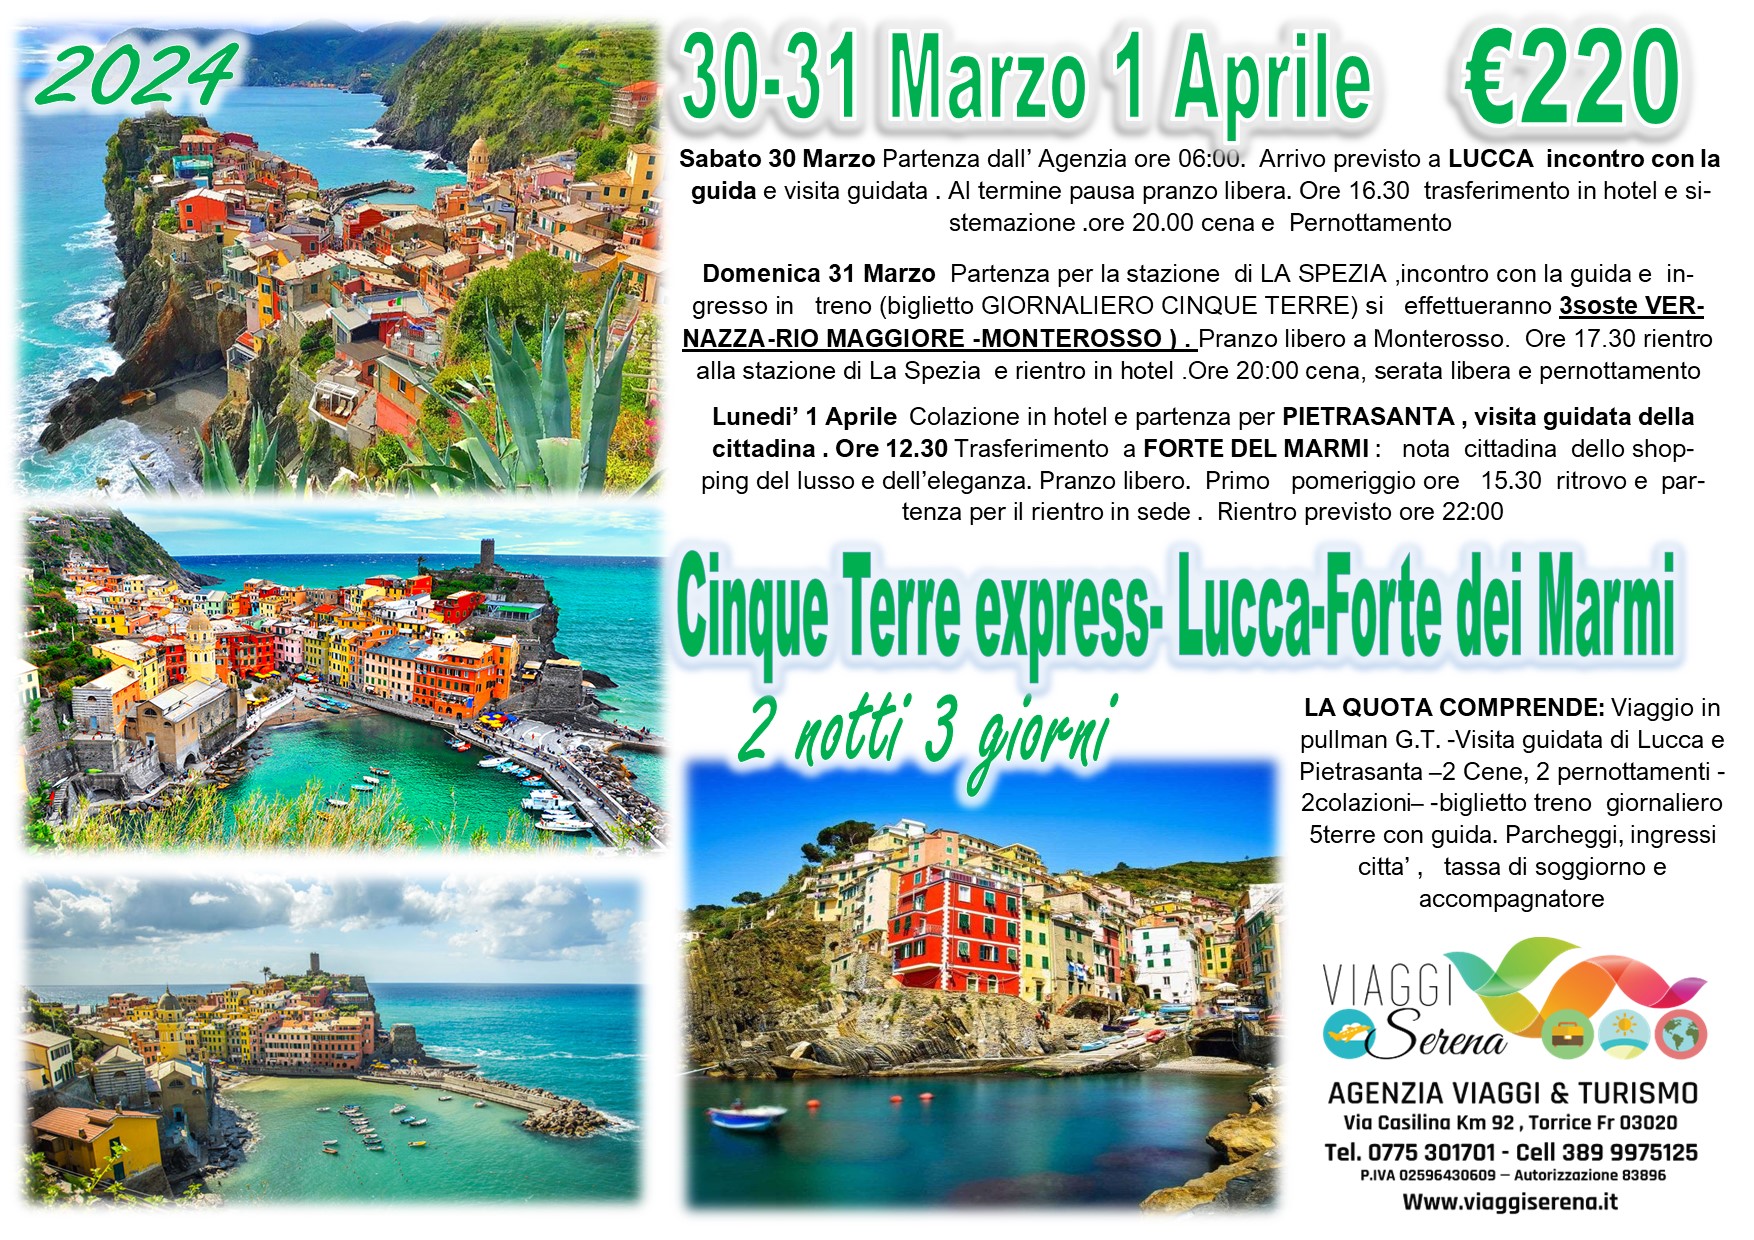 Viaggi di gruppo: Cinque Terre, Lucca, Forte dei Marmi & Pietrasanta 30-31 Marzo & 1 Aprile €220